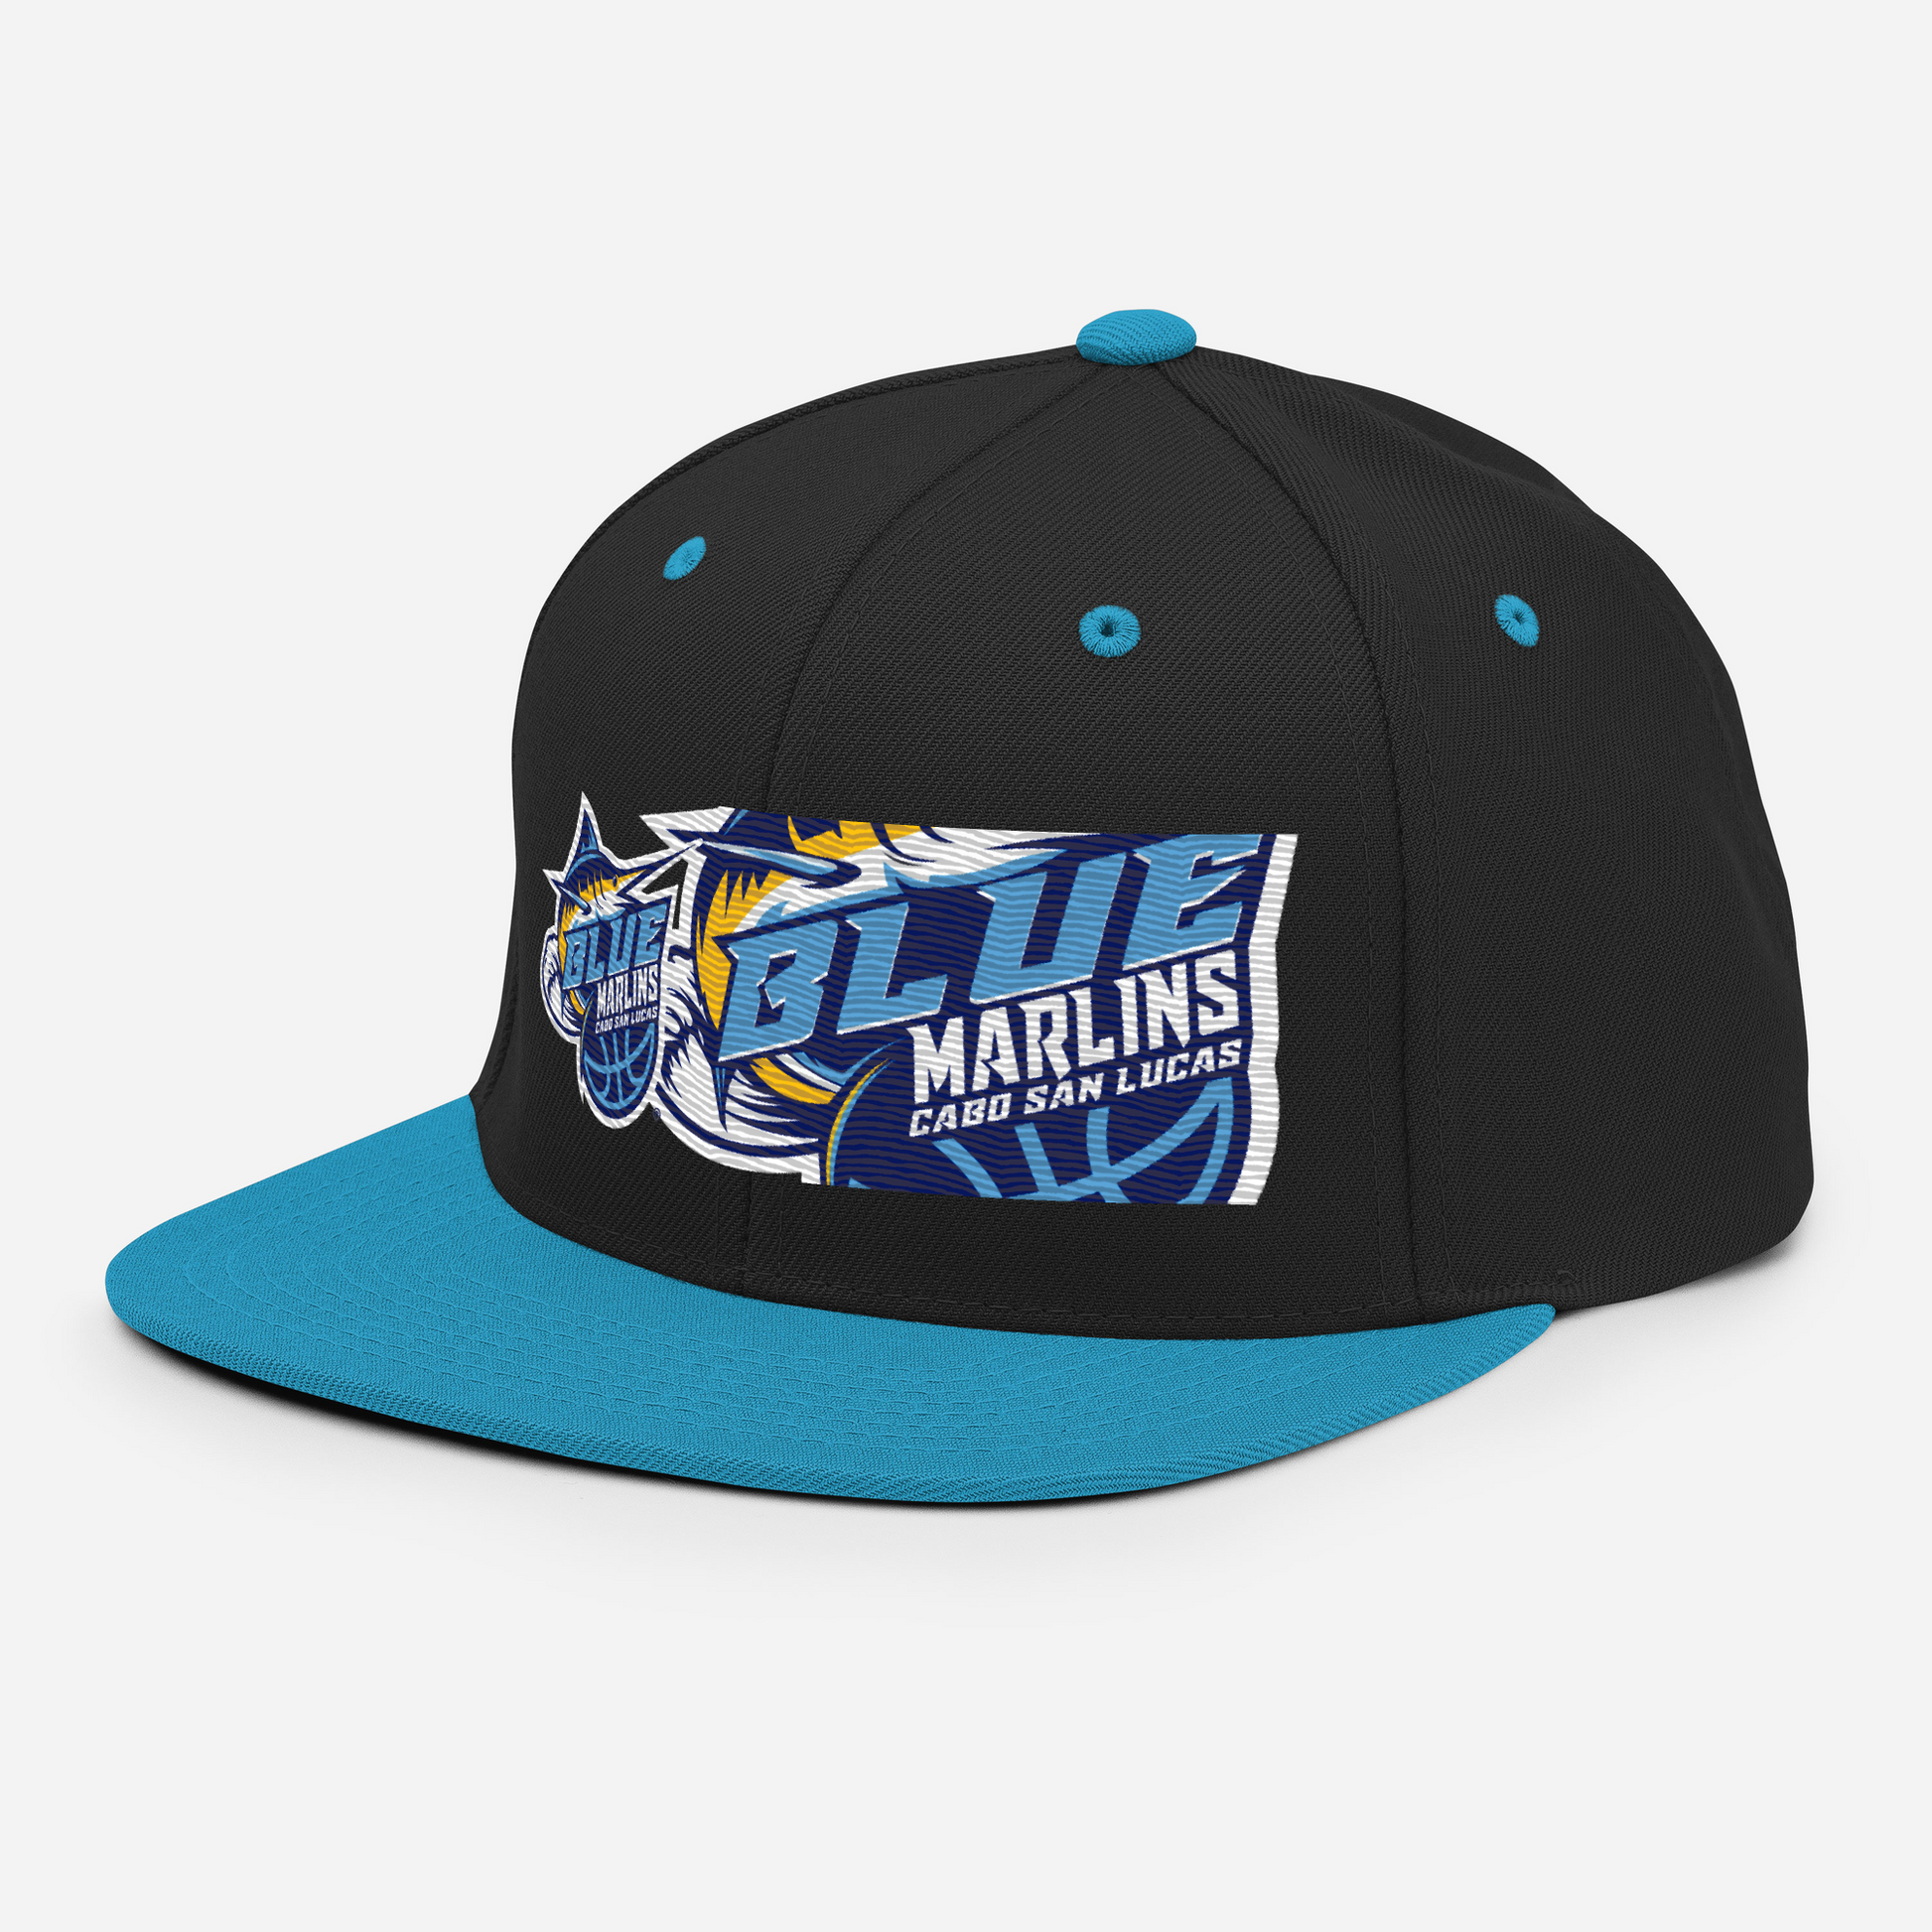 The Blue' Blue Marlins Team Hat Black/ Teal